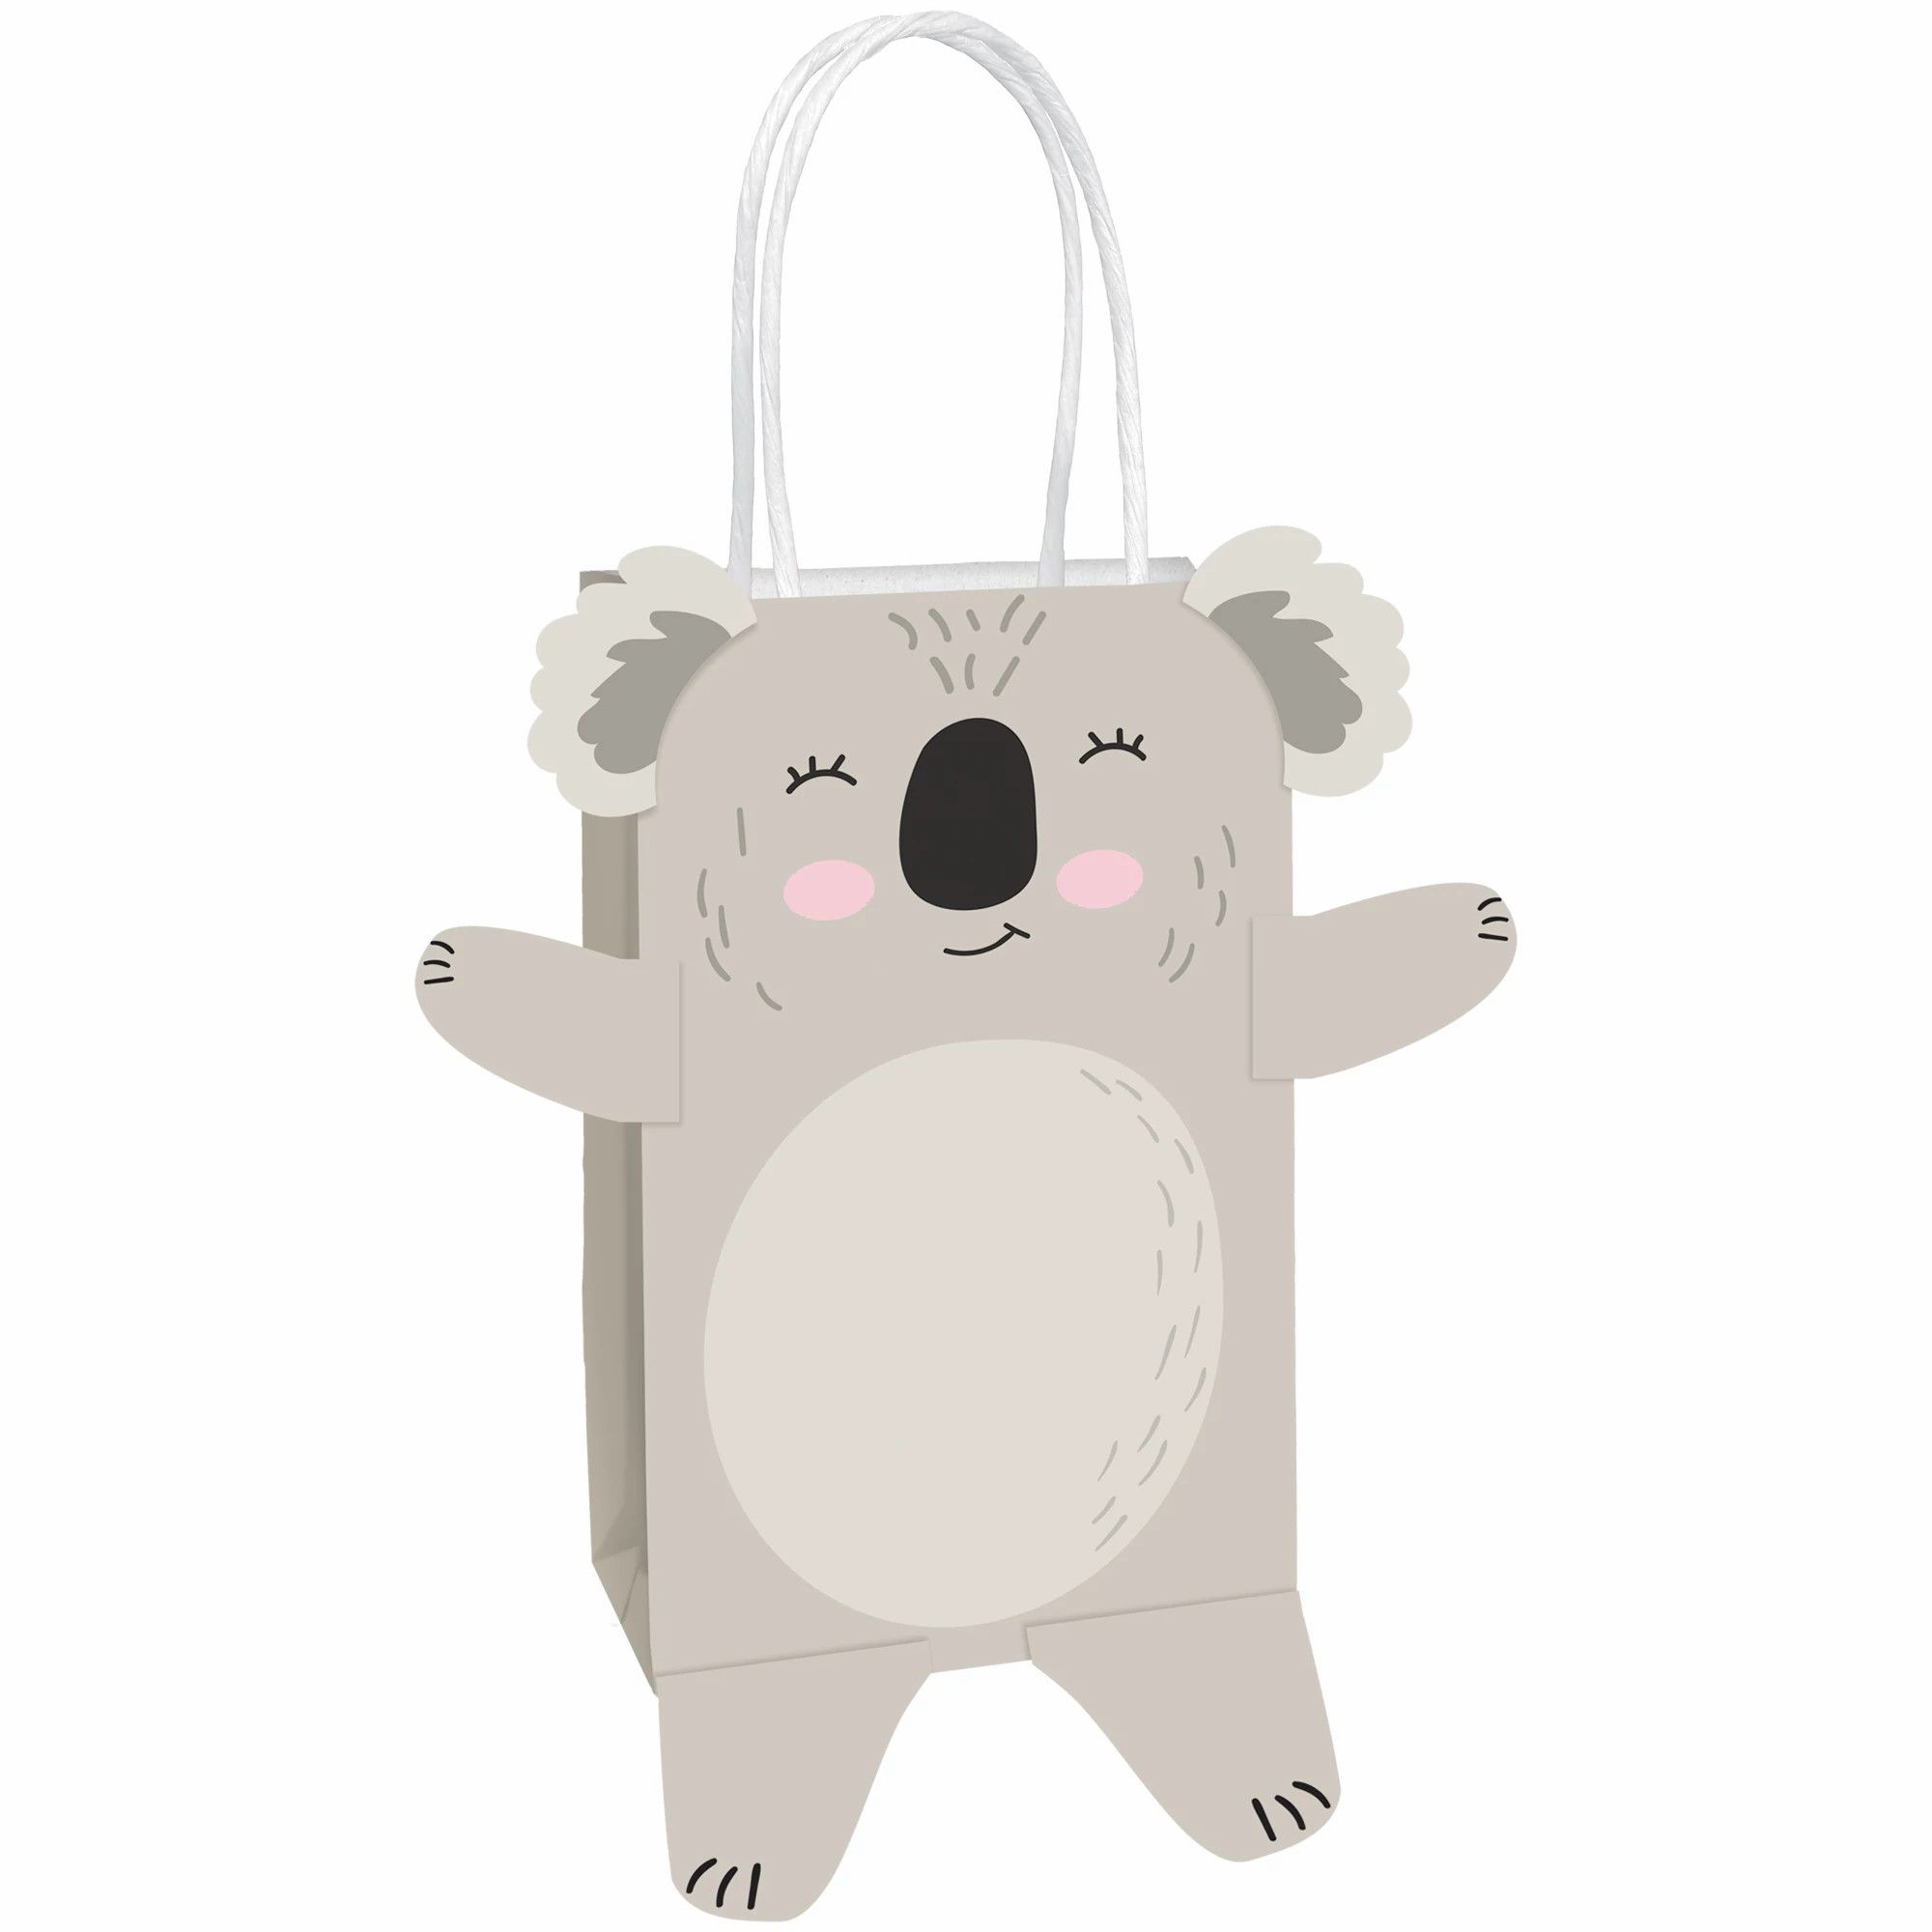 Koala Party Supplies Party Supplies Canada Open A Party - koala in a bag roblox